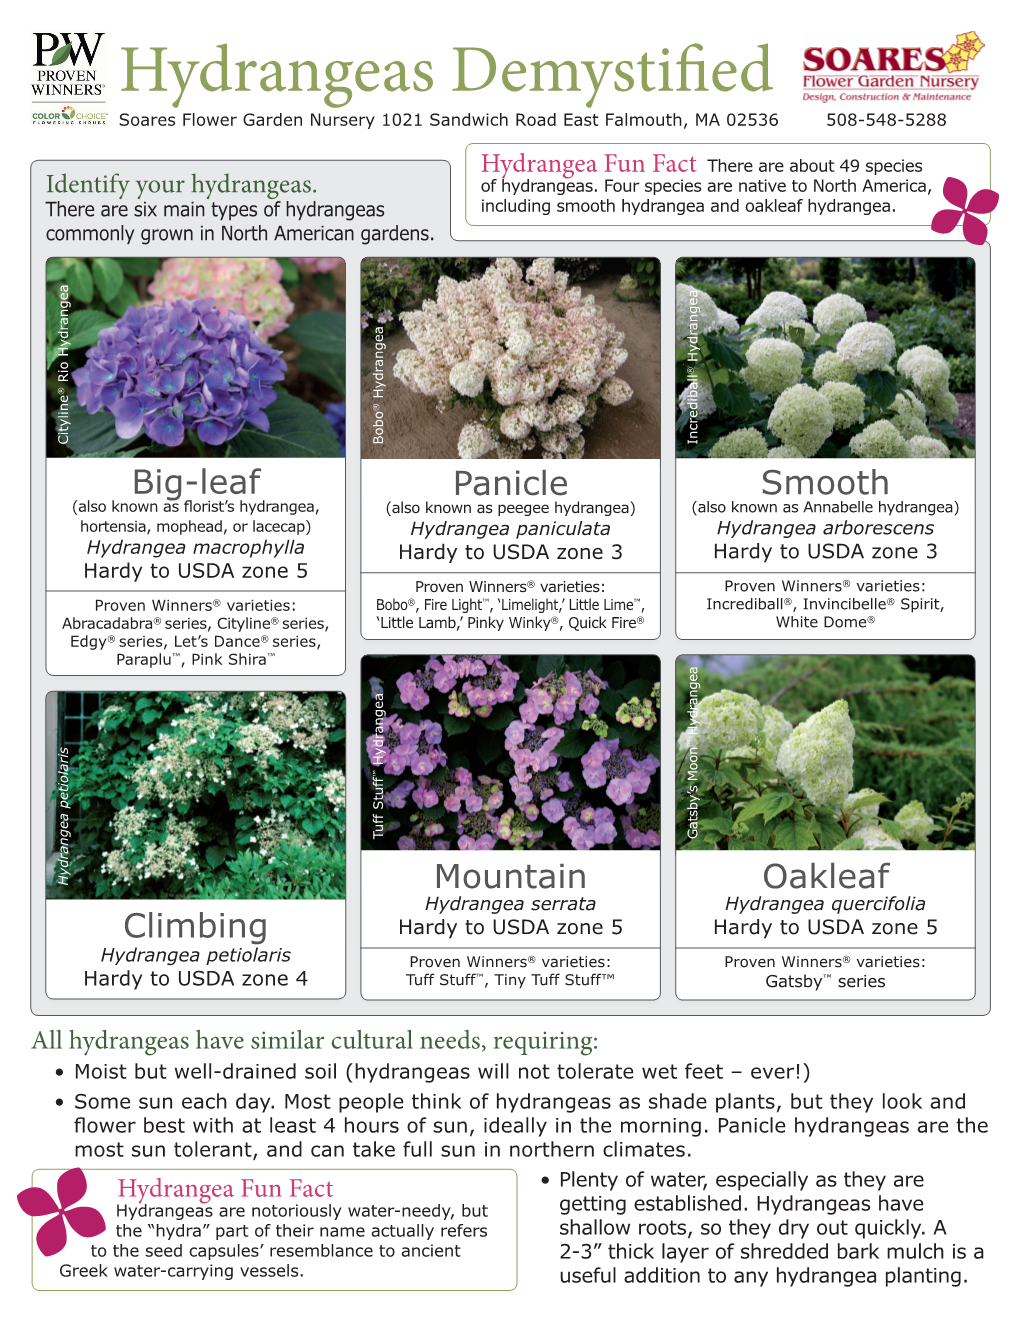 Hydrangeas Demystified Soares Flower Garden Nursery 1021 Sandwich Road East Falmouth, MA 02536 508-548-5288